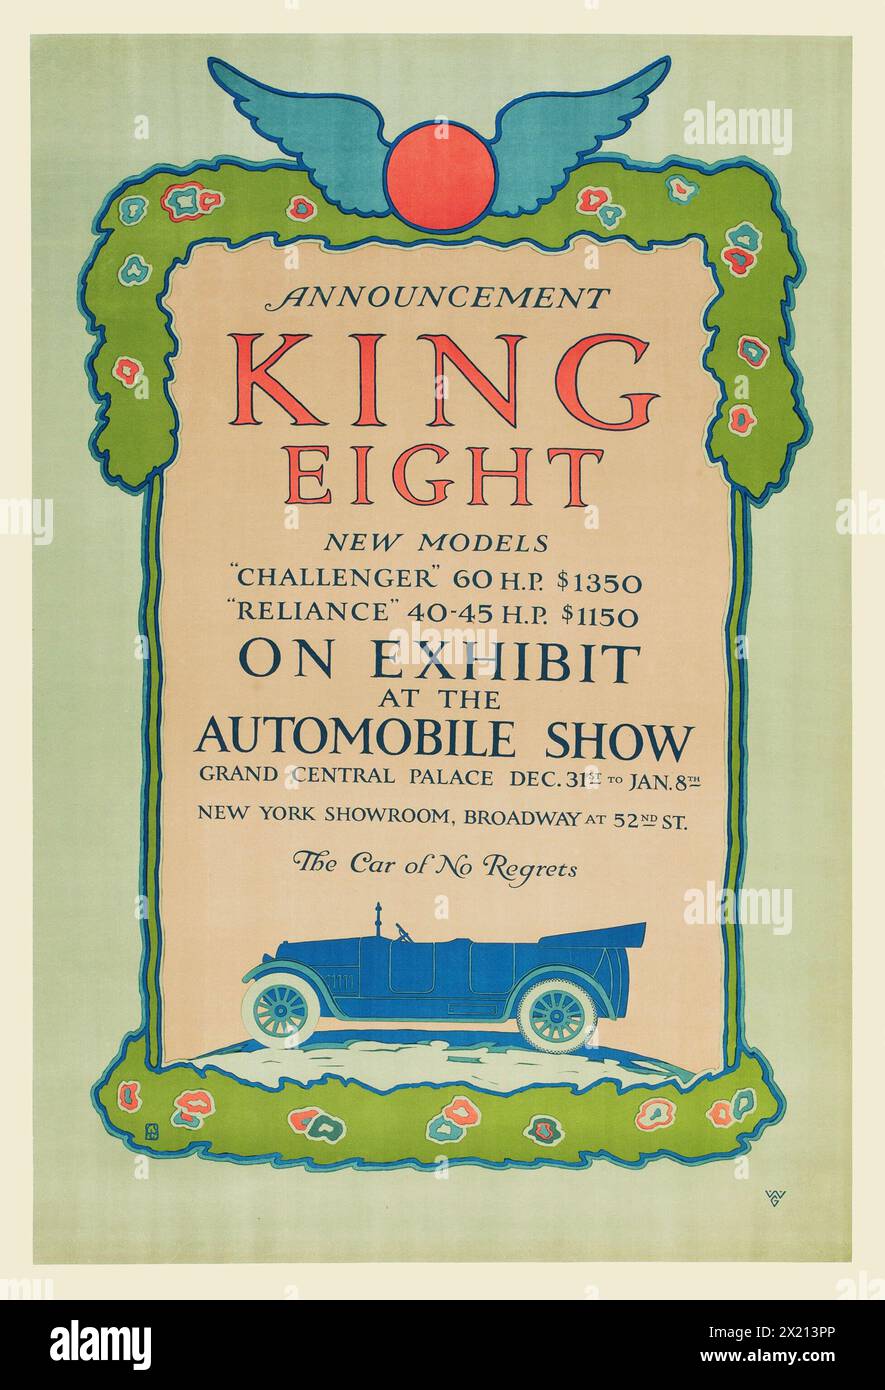 Anuncio del coche vintage - exhibición del automóvil - 1915 rey ocho en la exposición - nuevos modelos, 'Challenger' y 'Reliance' - sala de exposición de Nueva York, Grand Central Palace - cartel de publicidad Foto de stock